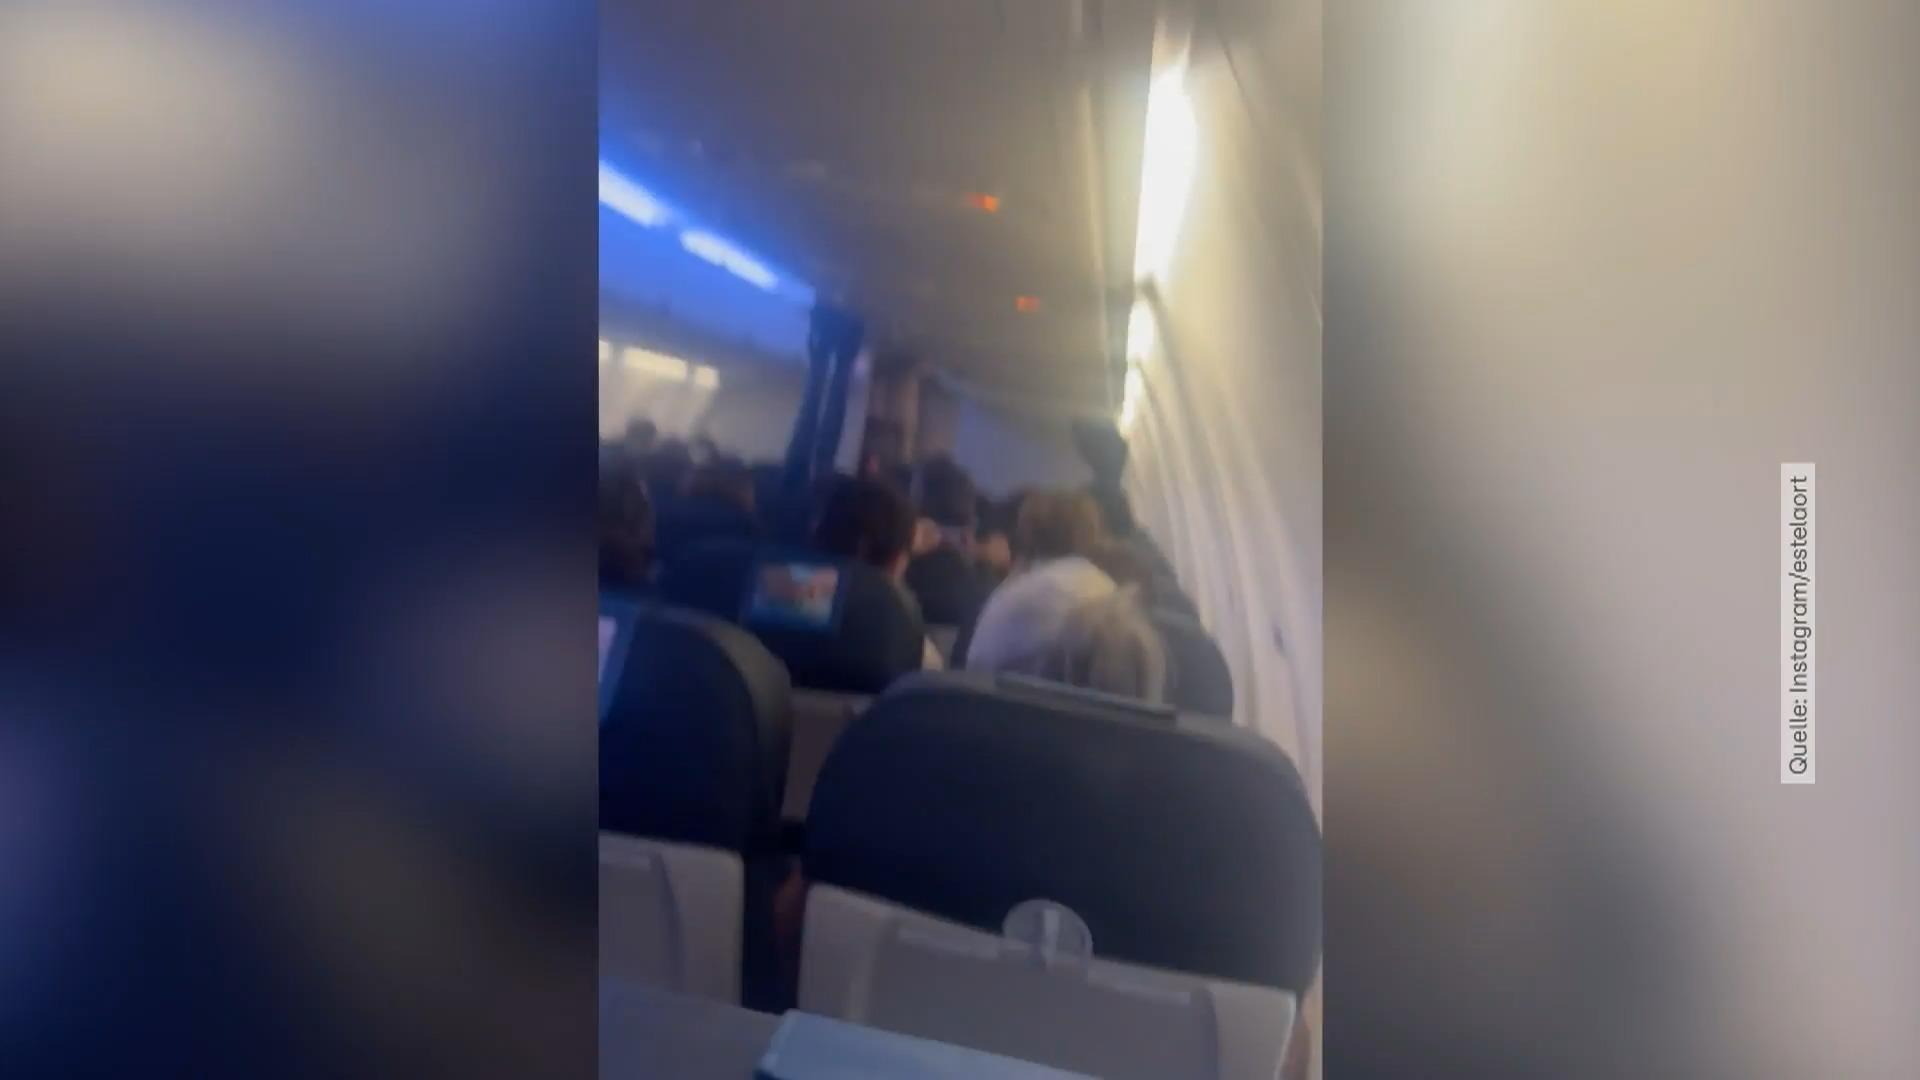 Mallorca-Flieger gerät in Sturm und kann nicht landen Video zeigt kreischende Passagiere